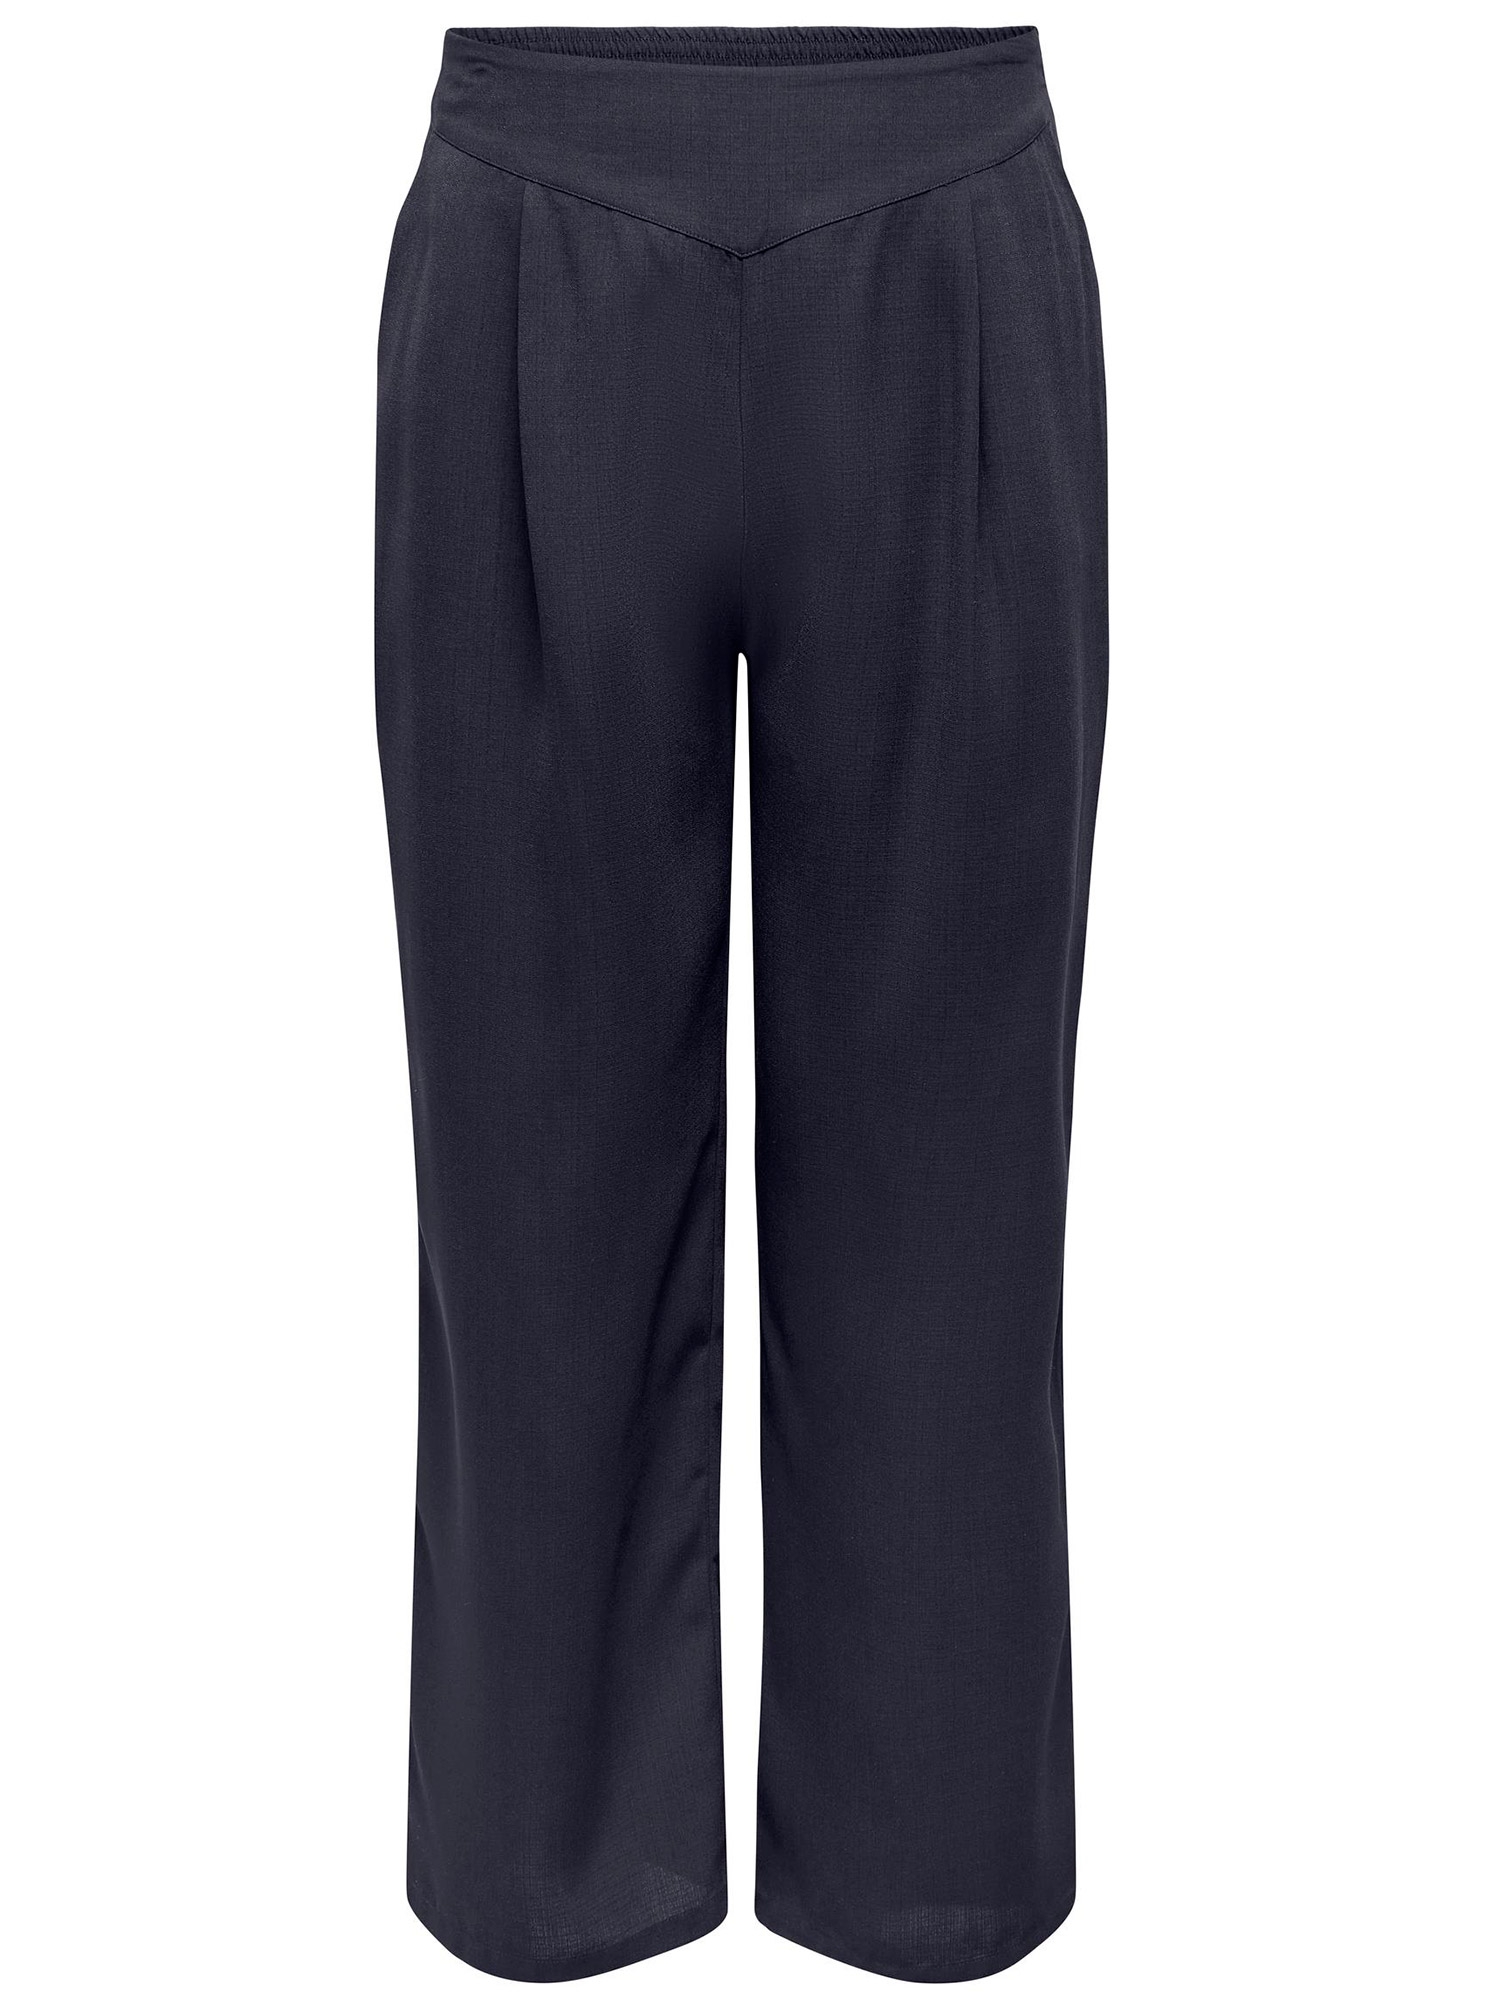 JACKO - Mørkeblå habit bukser fra Only Carmakoma